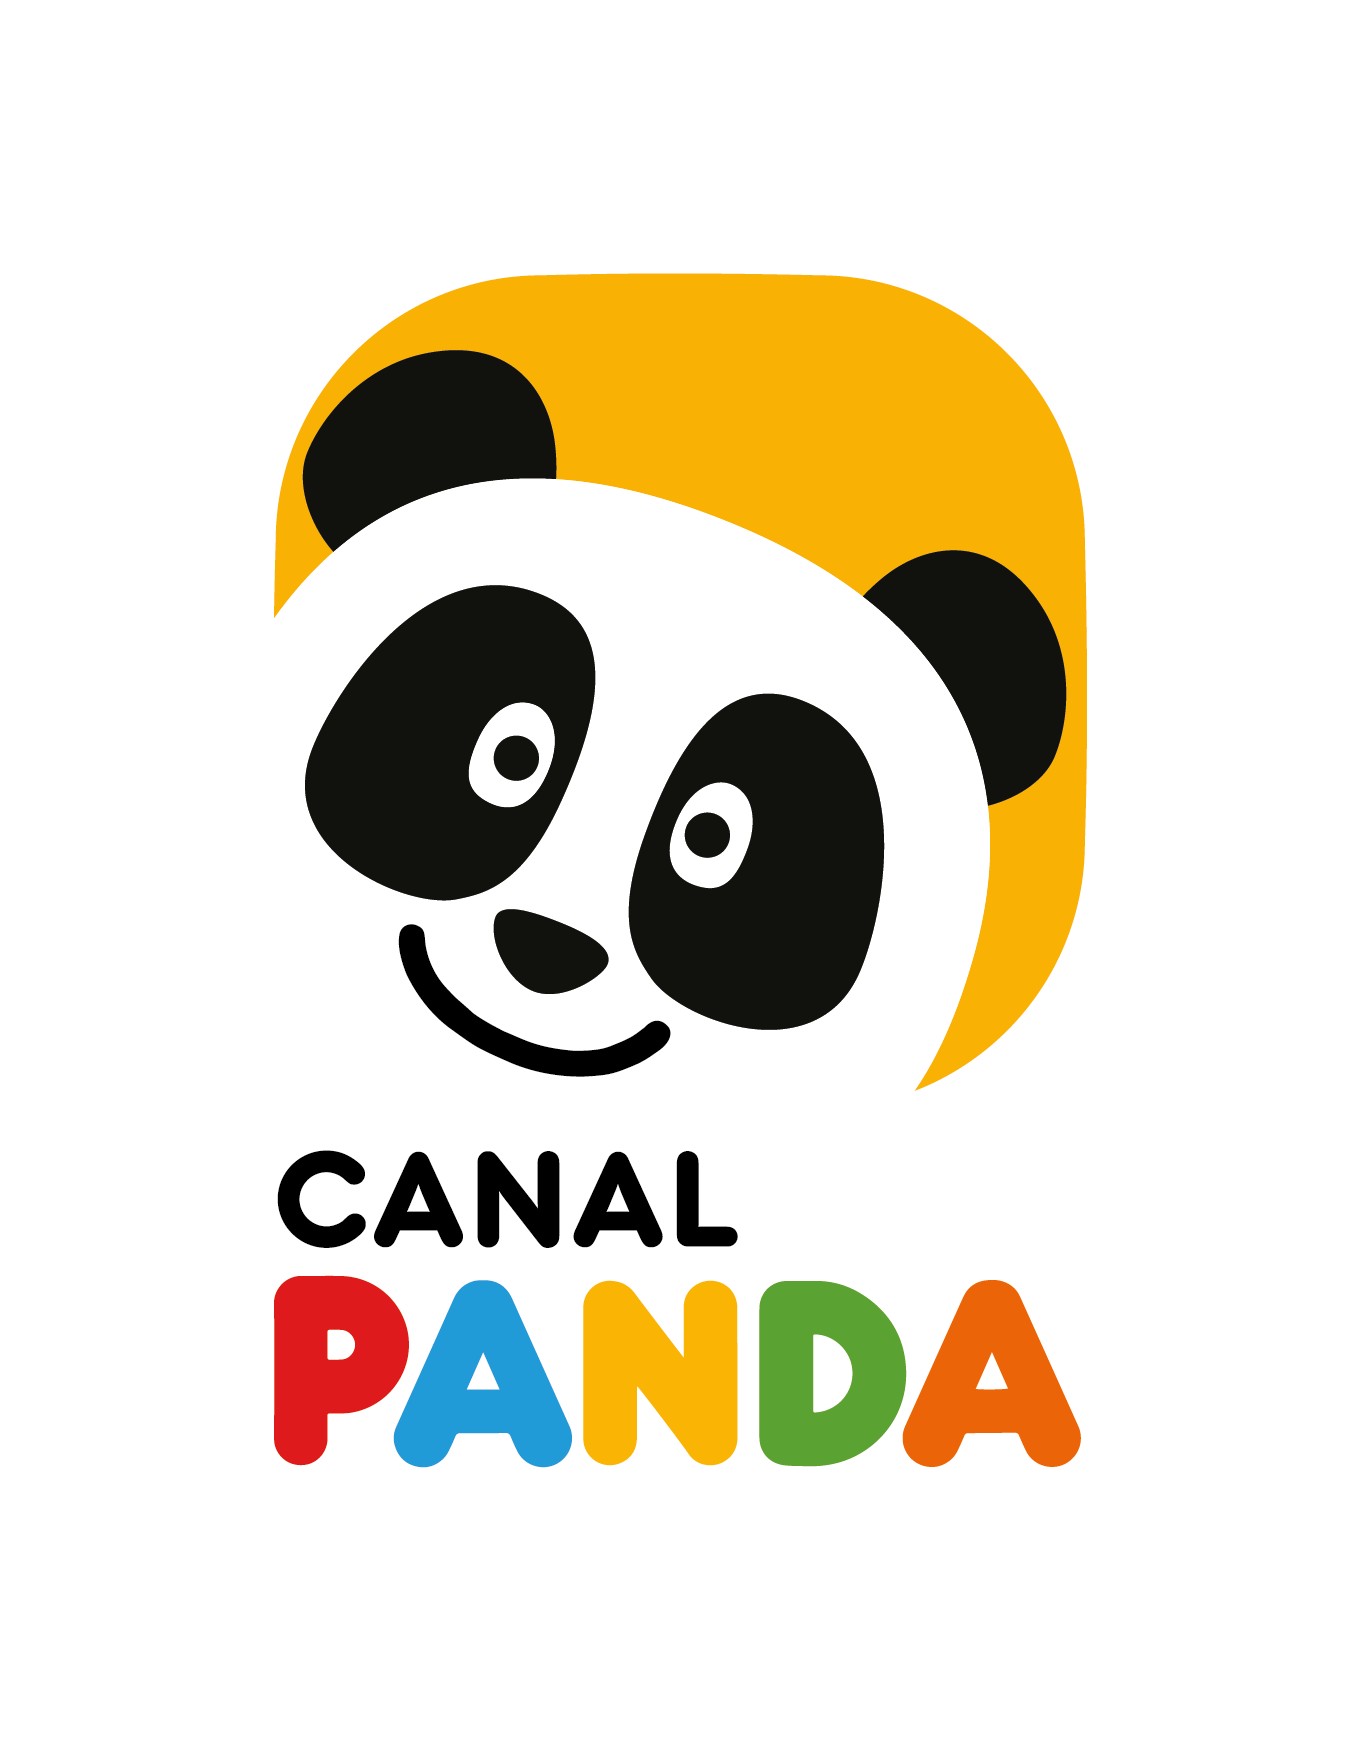 Canal Panda - Diverte-te e aprende com o Panda e os seus amigos